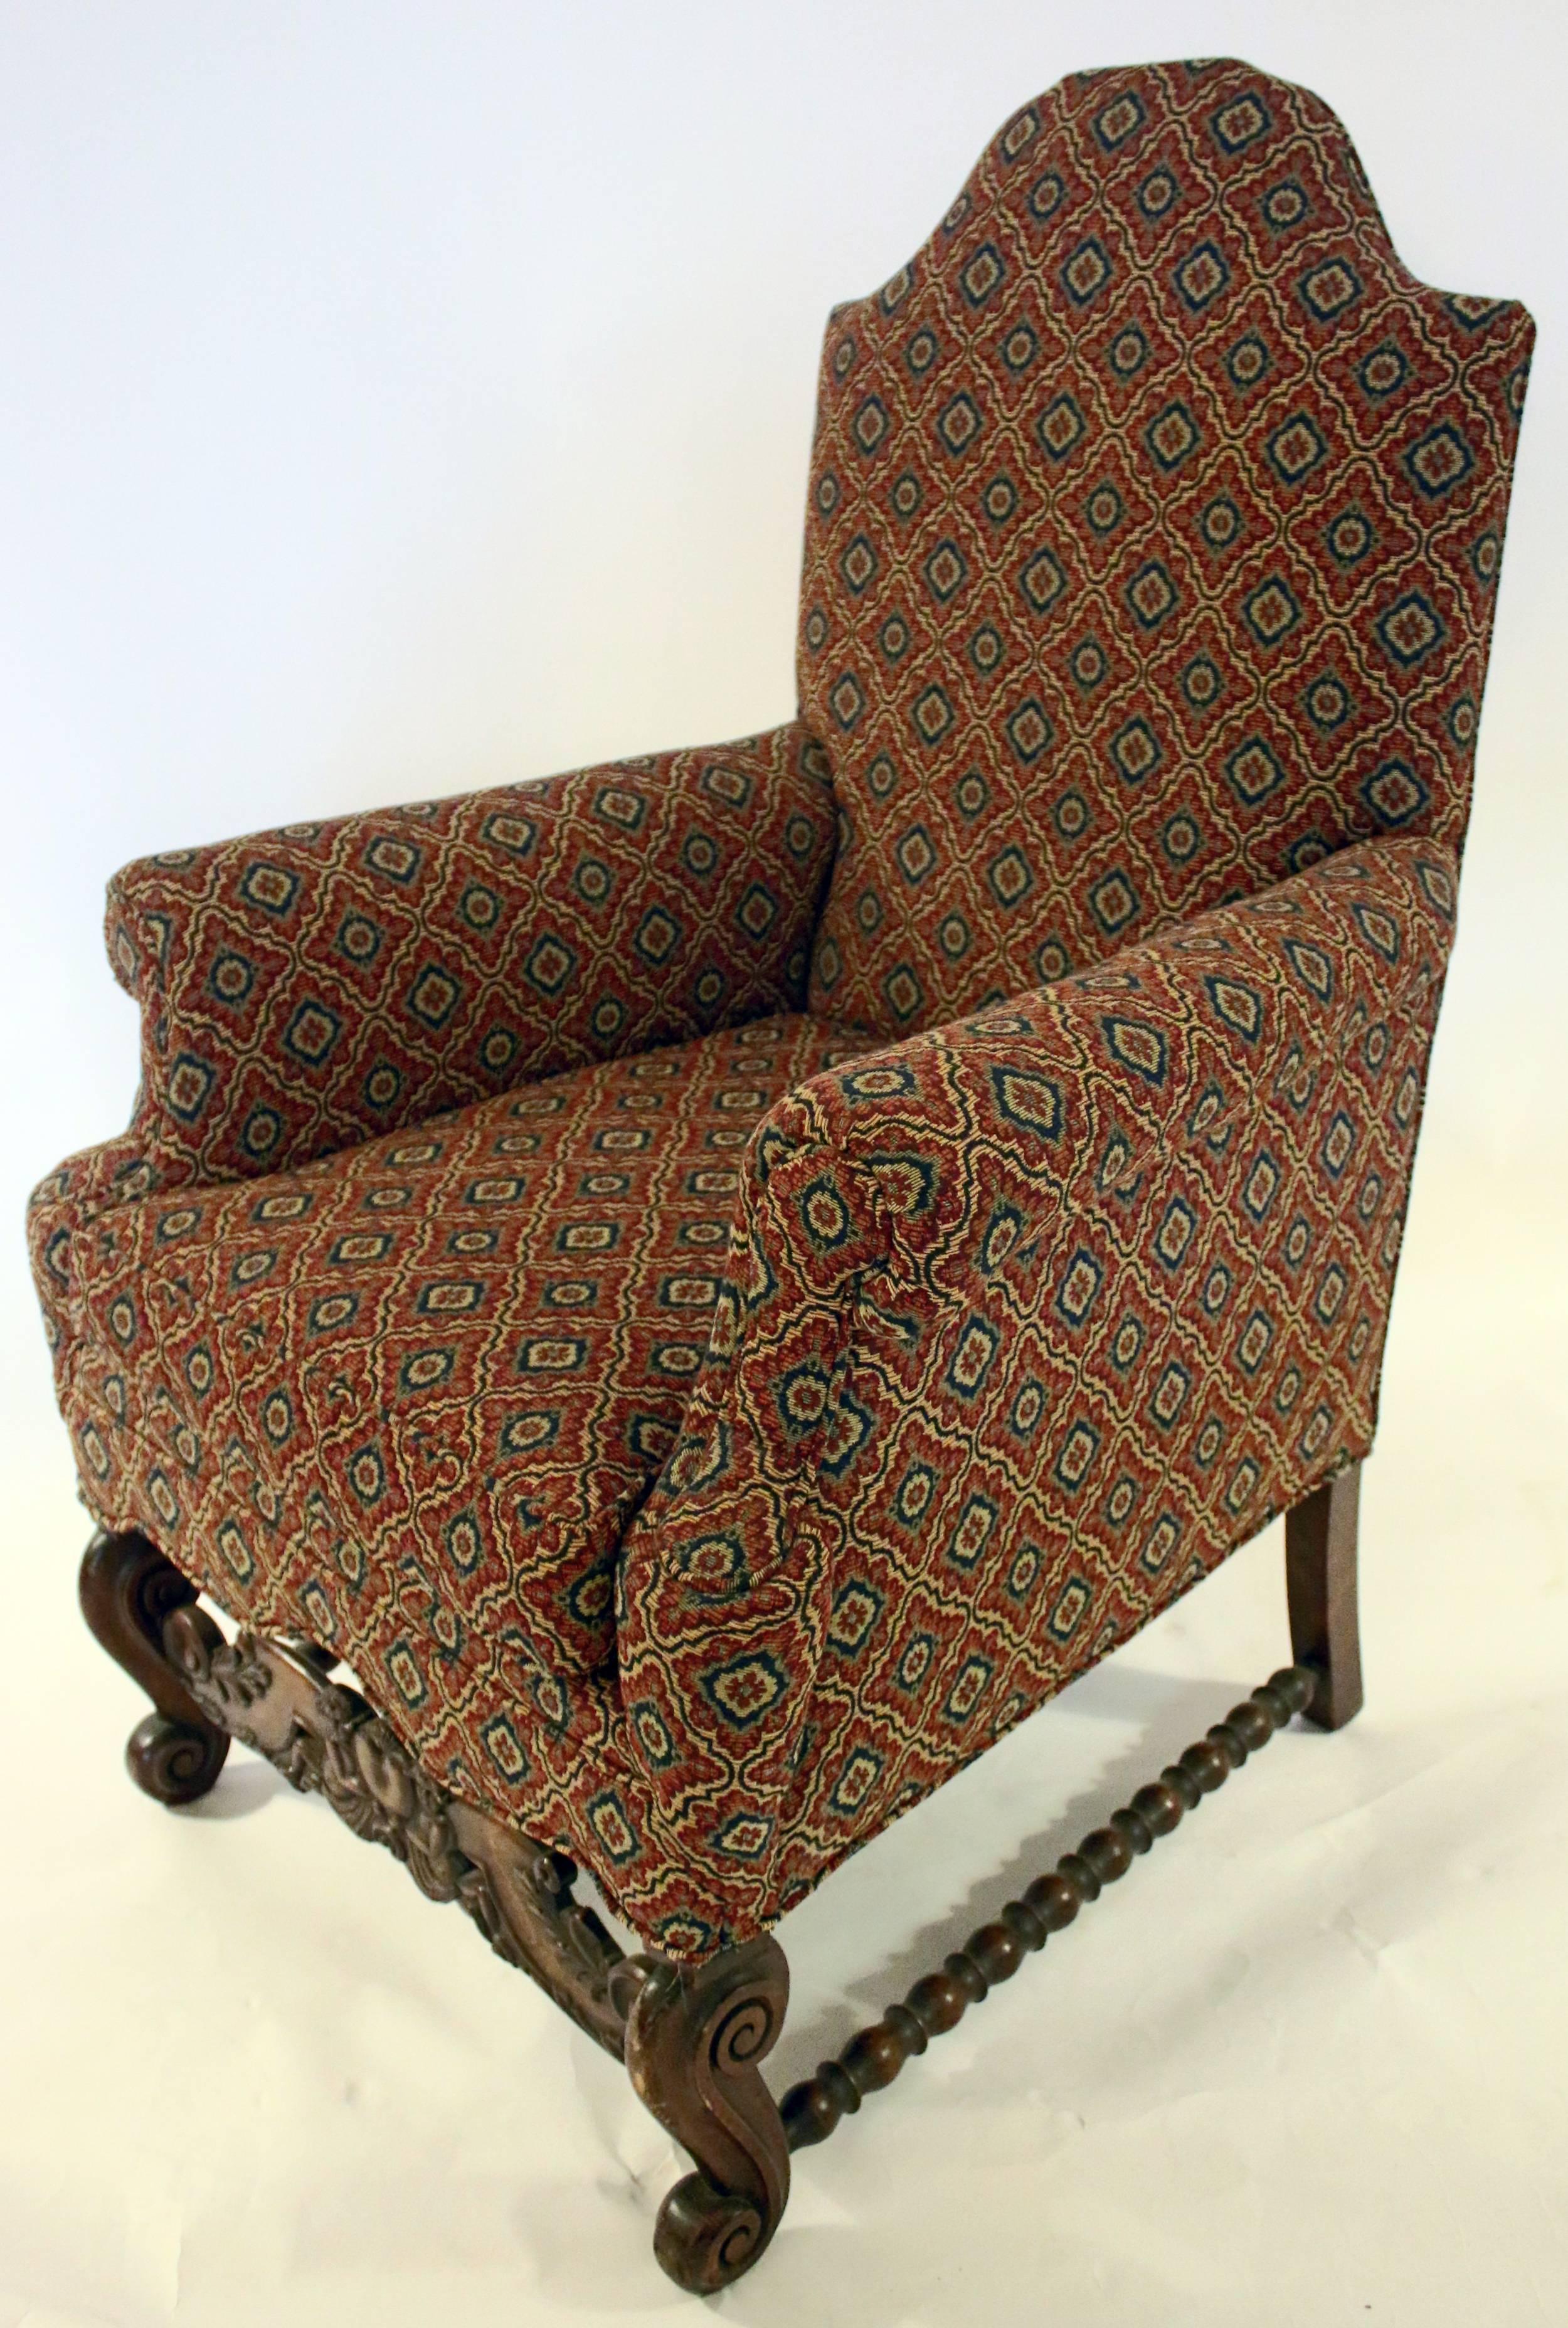 Zwei gepolsterte Sessel im jakobinischen Revival-Stil, um 1890. Zu den Merkmalen gehören ein leicht gewölbter Rücken und ausgestellte Arme. Sie sind auf sehr stabilen Rahmen aus englischem Nussbaumholz aufgebaut. Die vorderen Sockel sind in Herzform